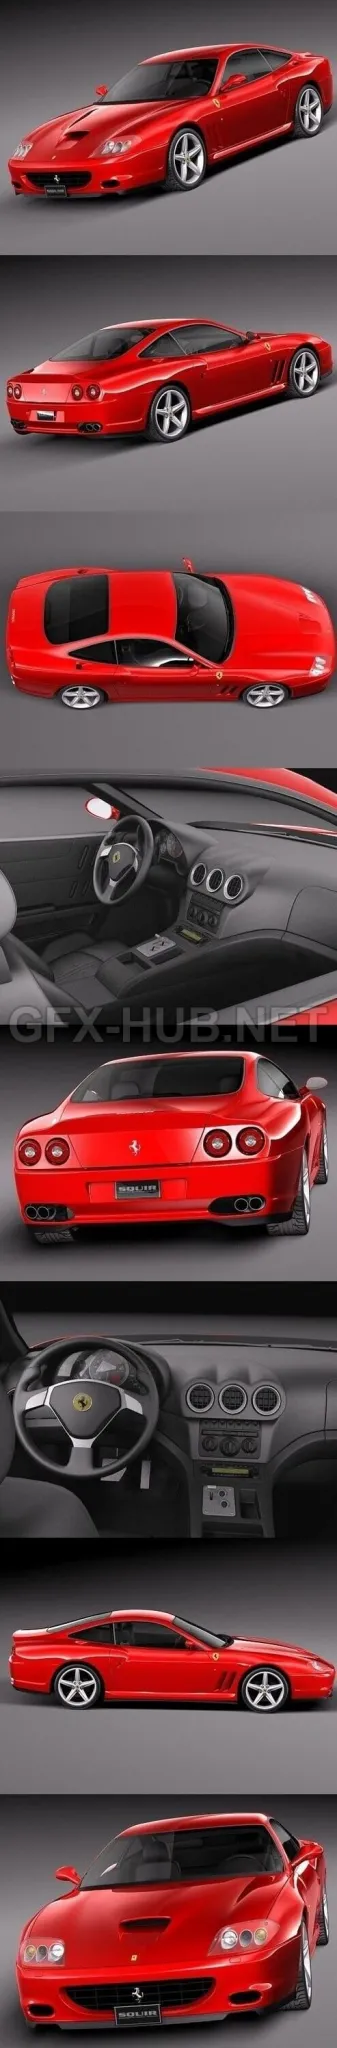 CAR – Ferrari 575M Maranello 2002-2006  3D Model